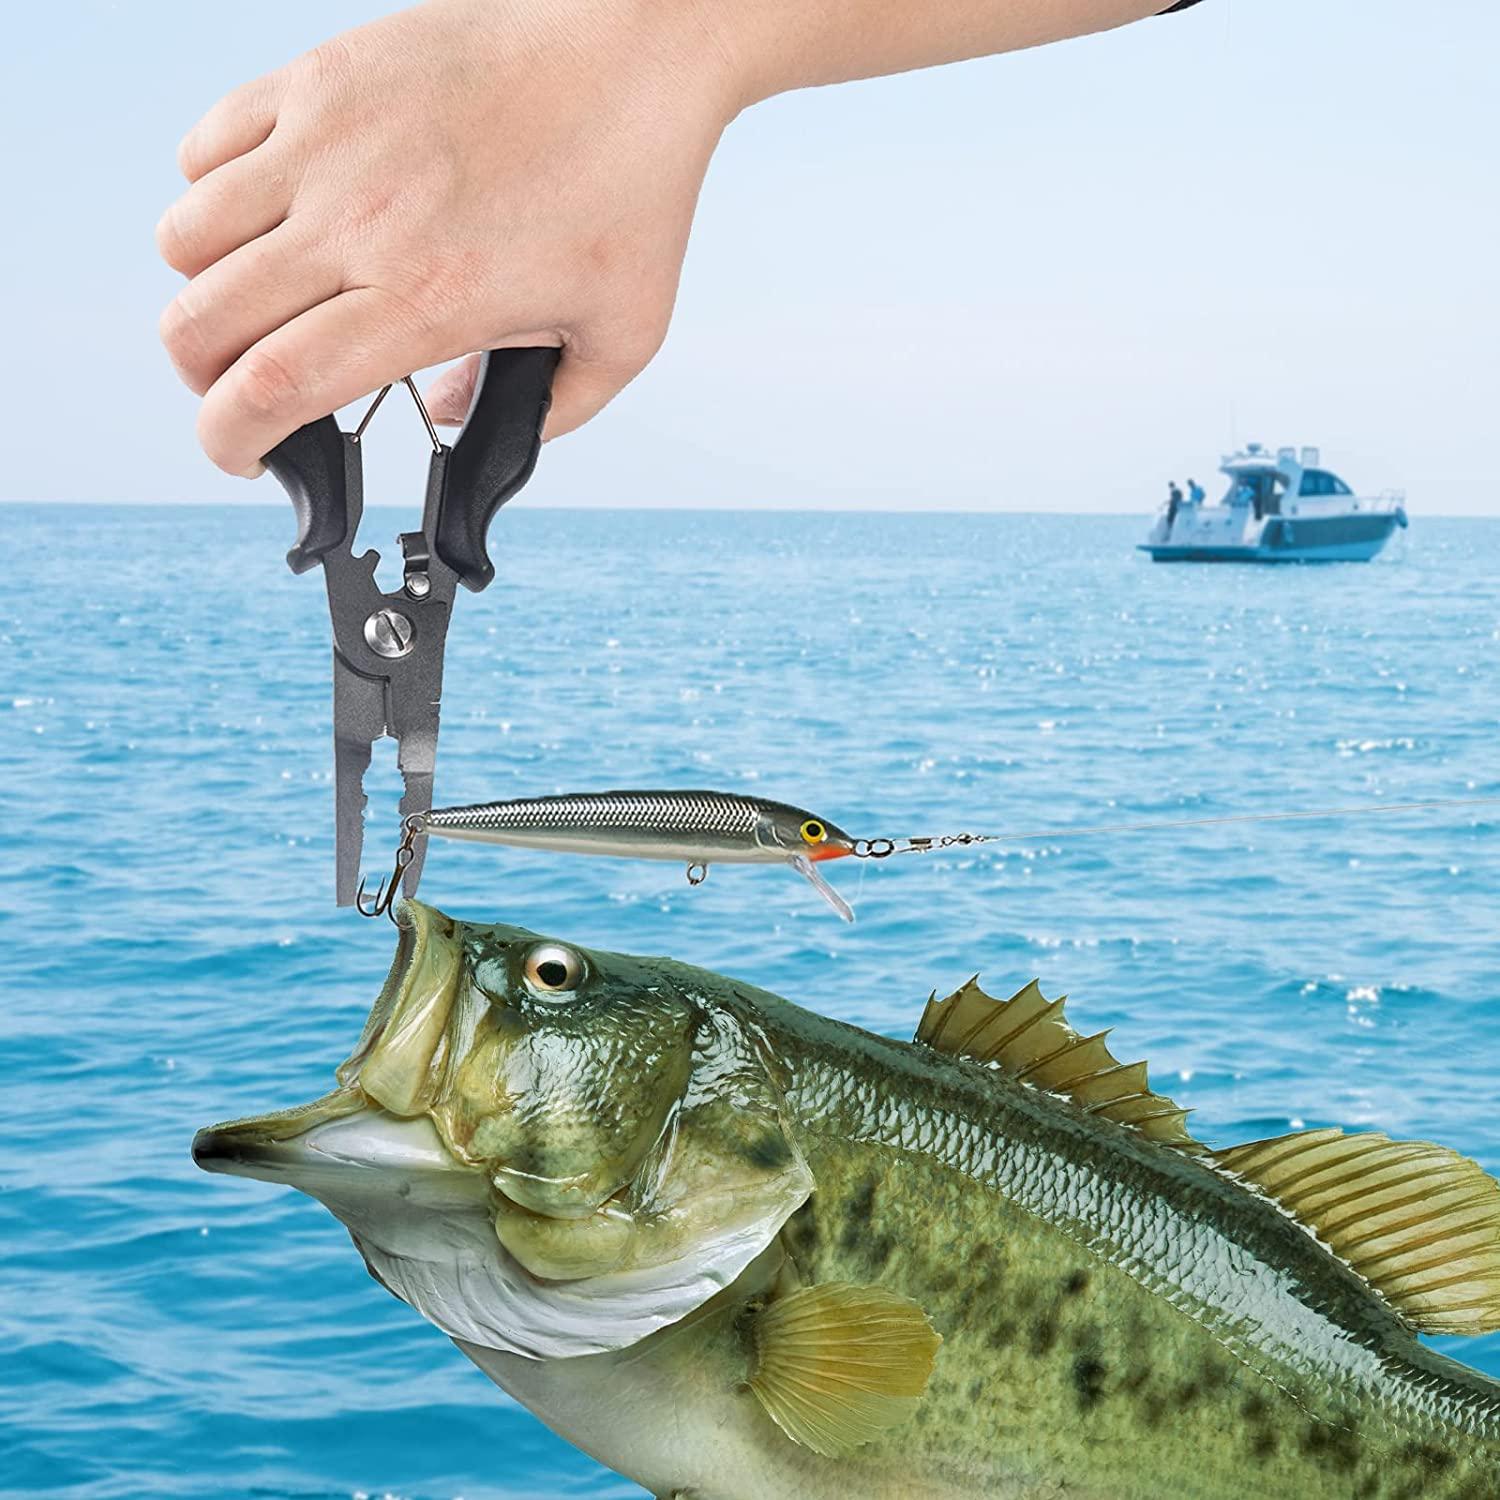 Fishing Plier Fish Grip, Fishing Grip Tool Stainless